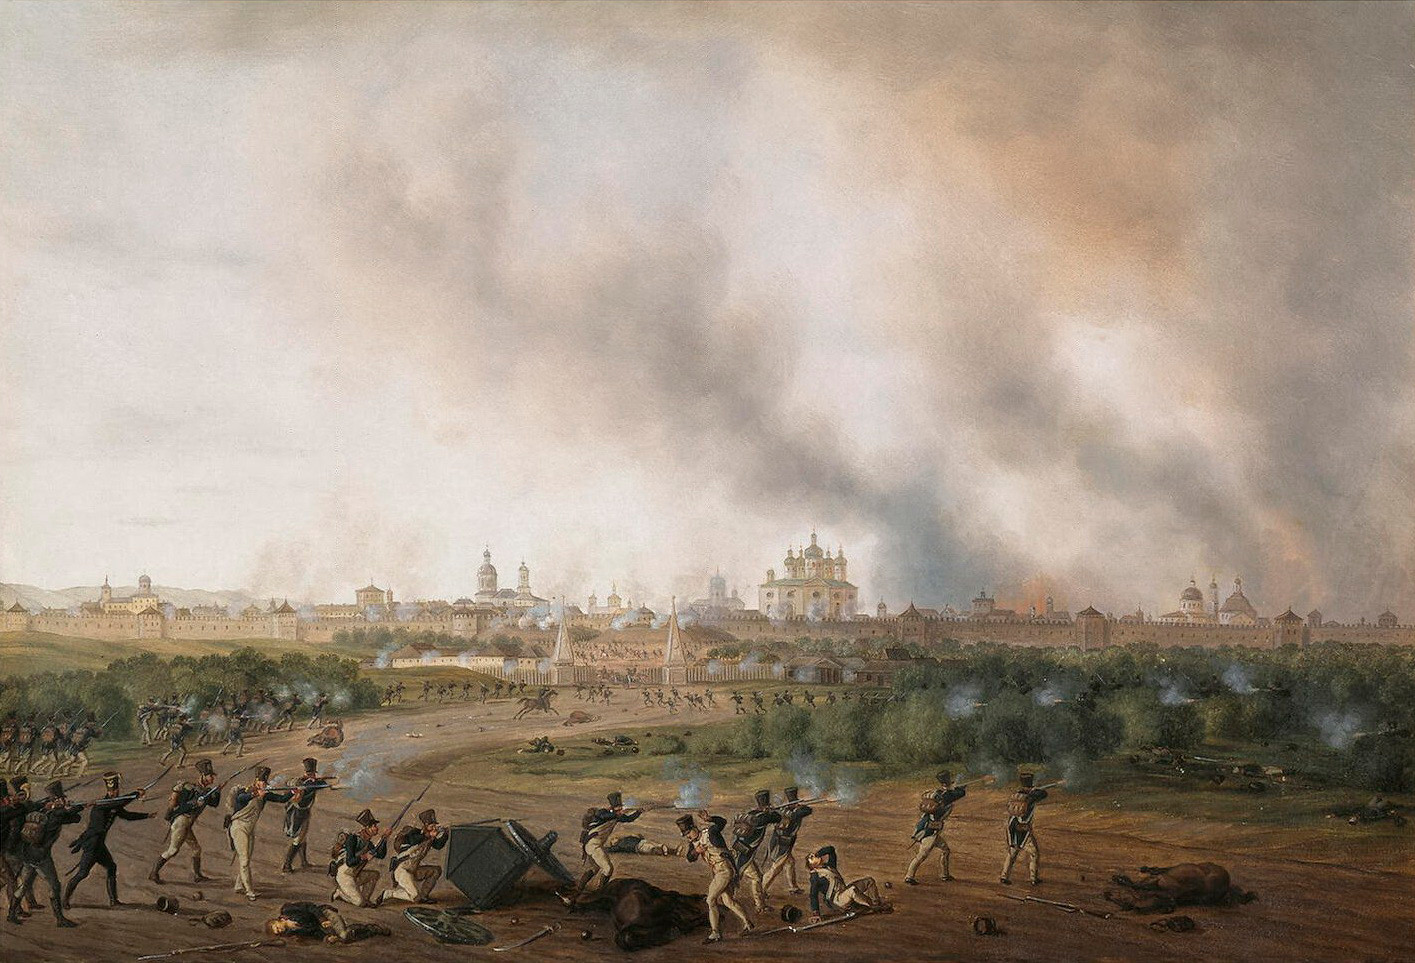 Albrecht Adam. Battle of Smolensk on 18 August 1812